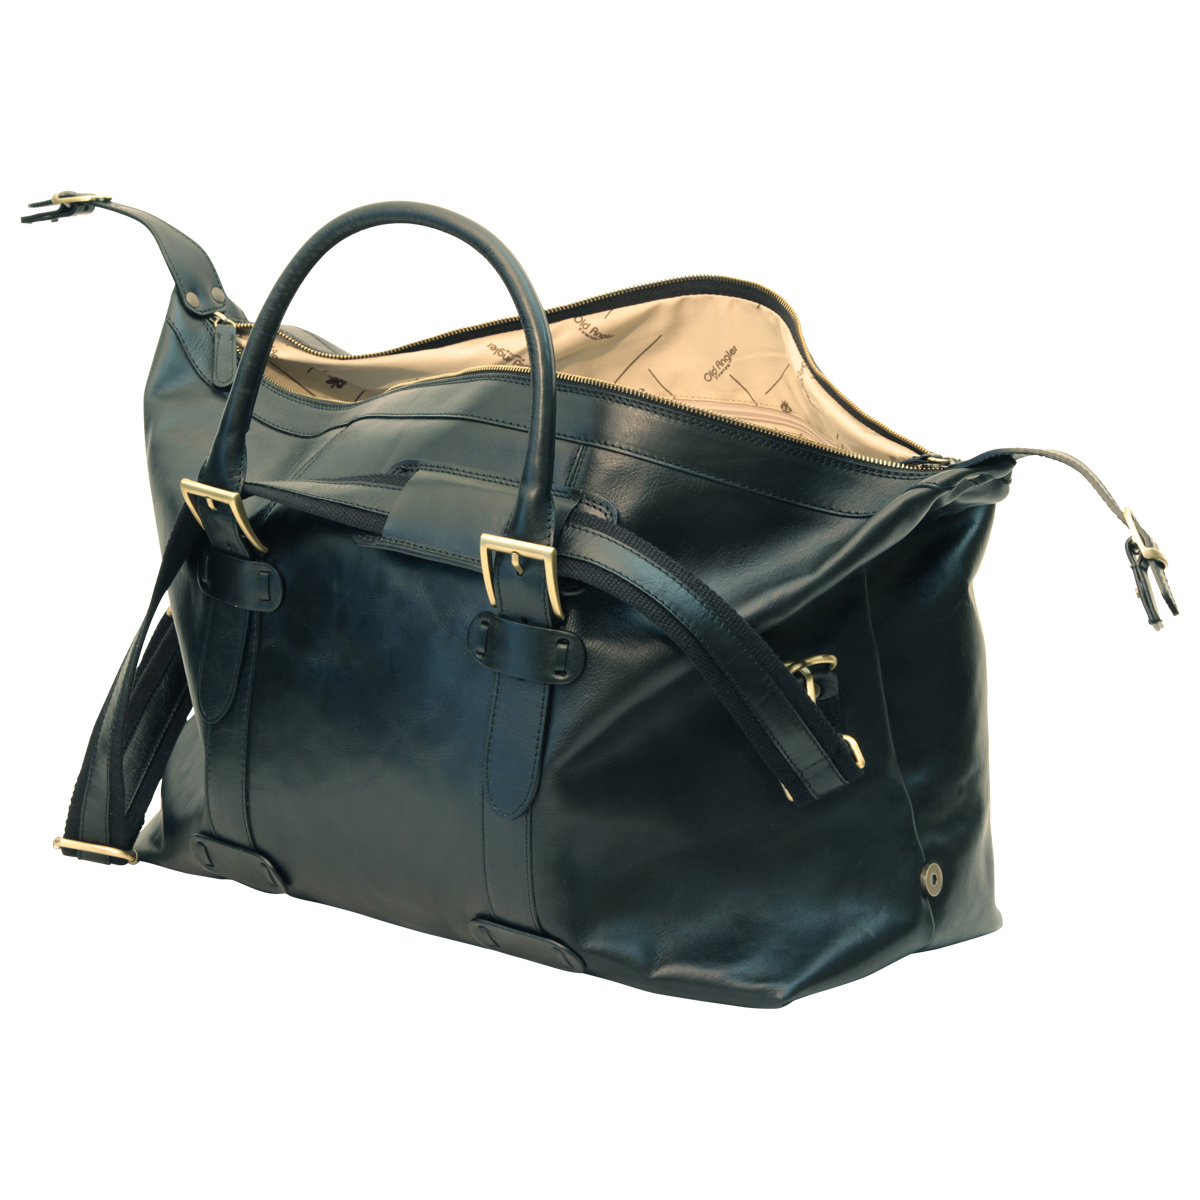 Cowhide leather Travel Bag - Black | 410689NE US | Old Angler Firenze